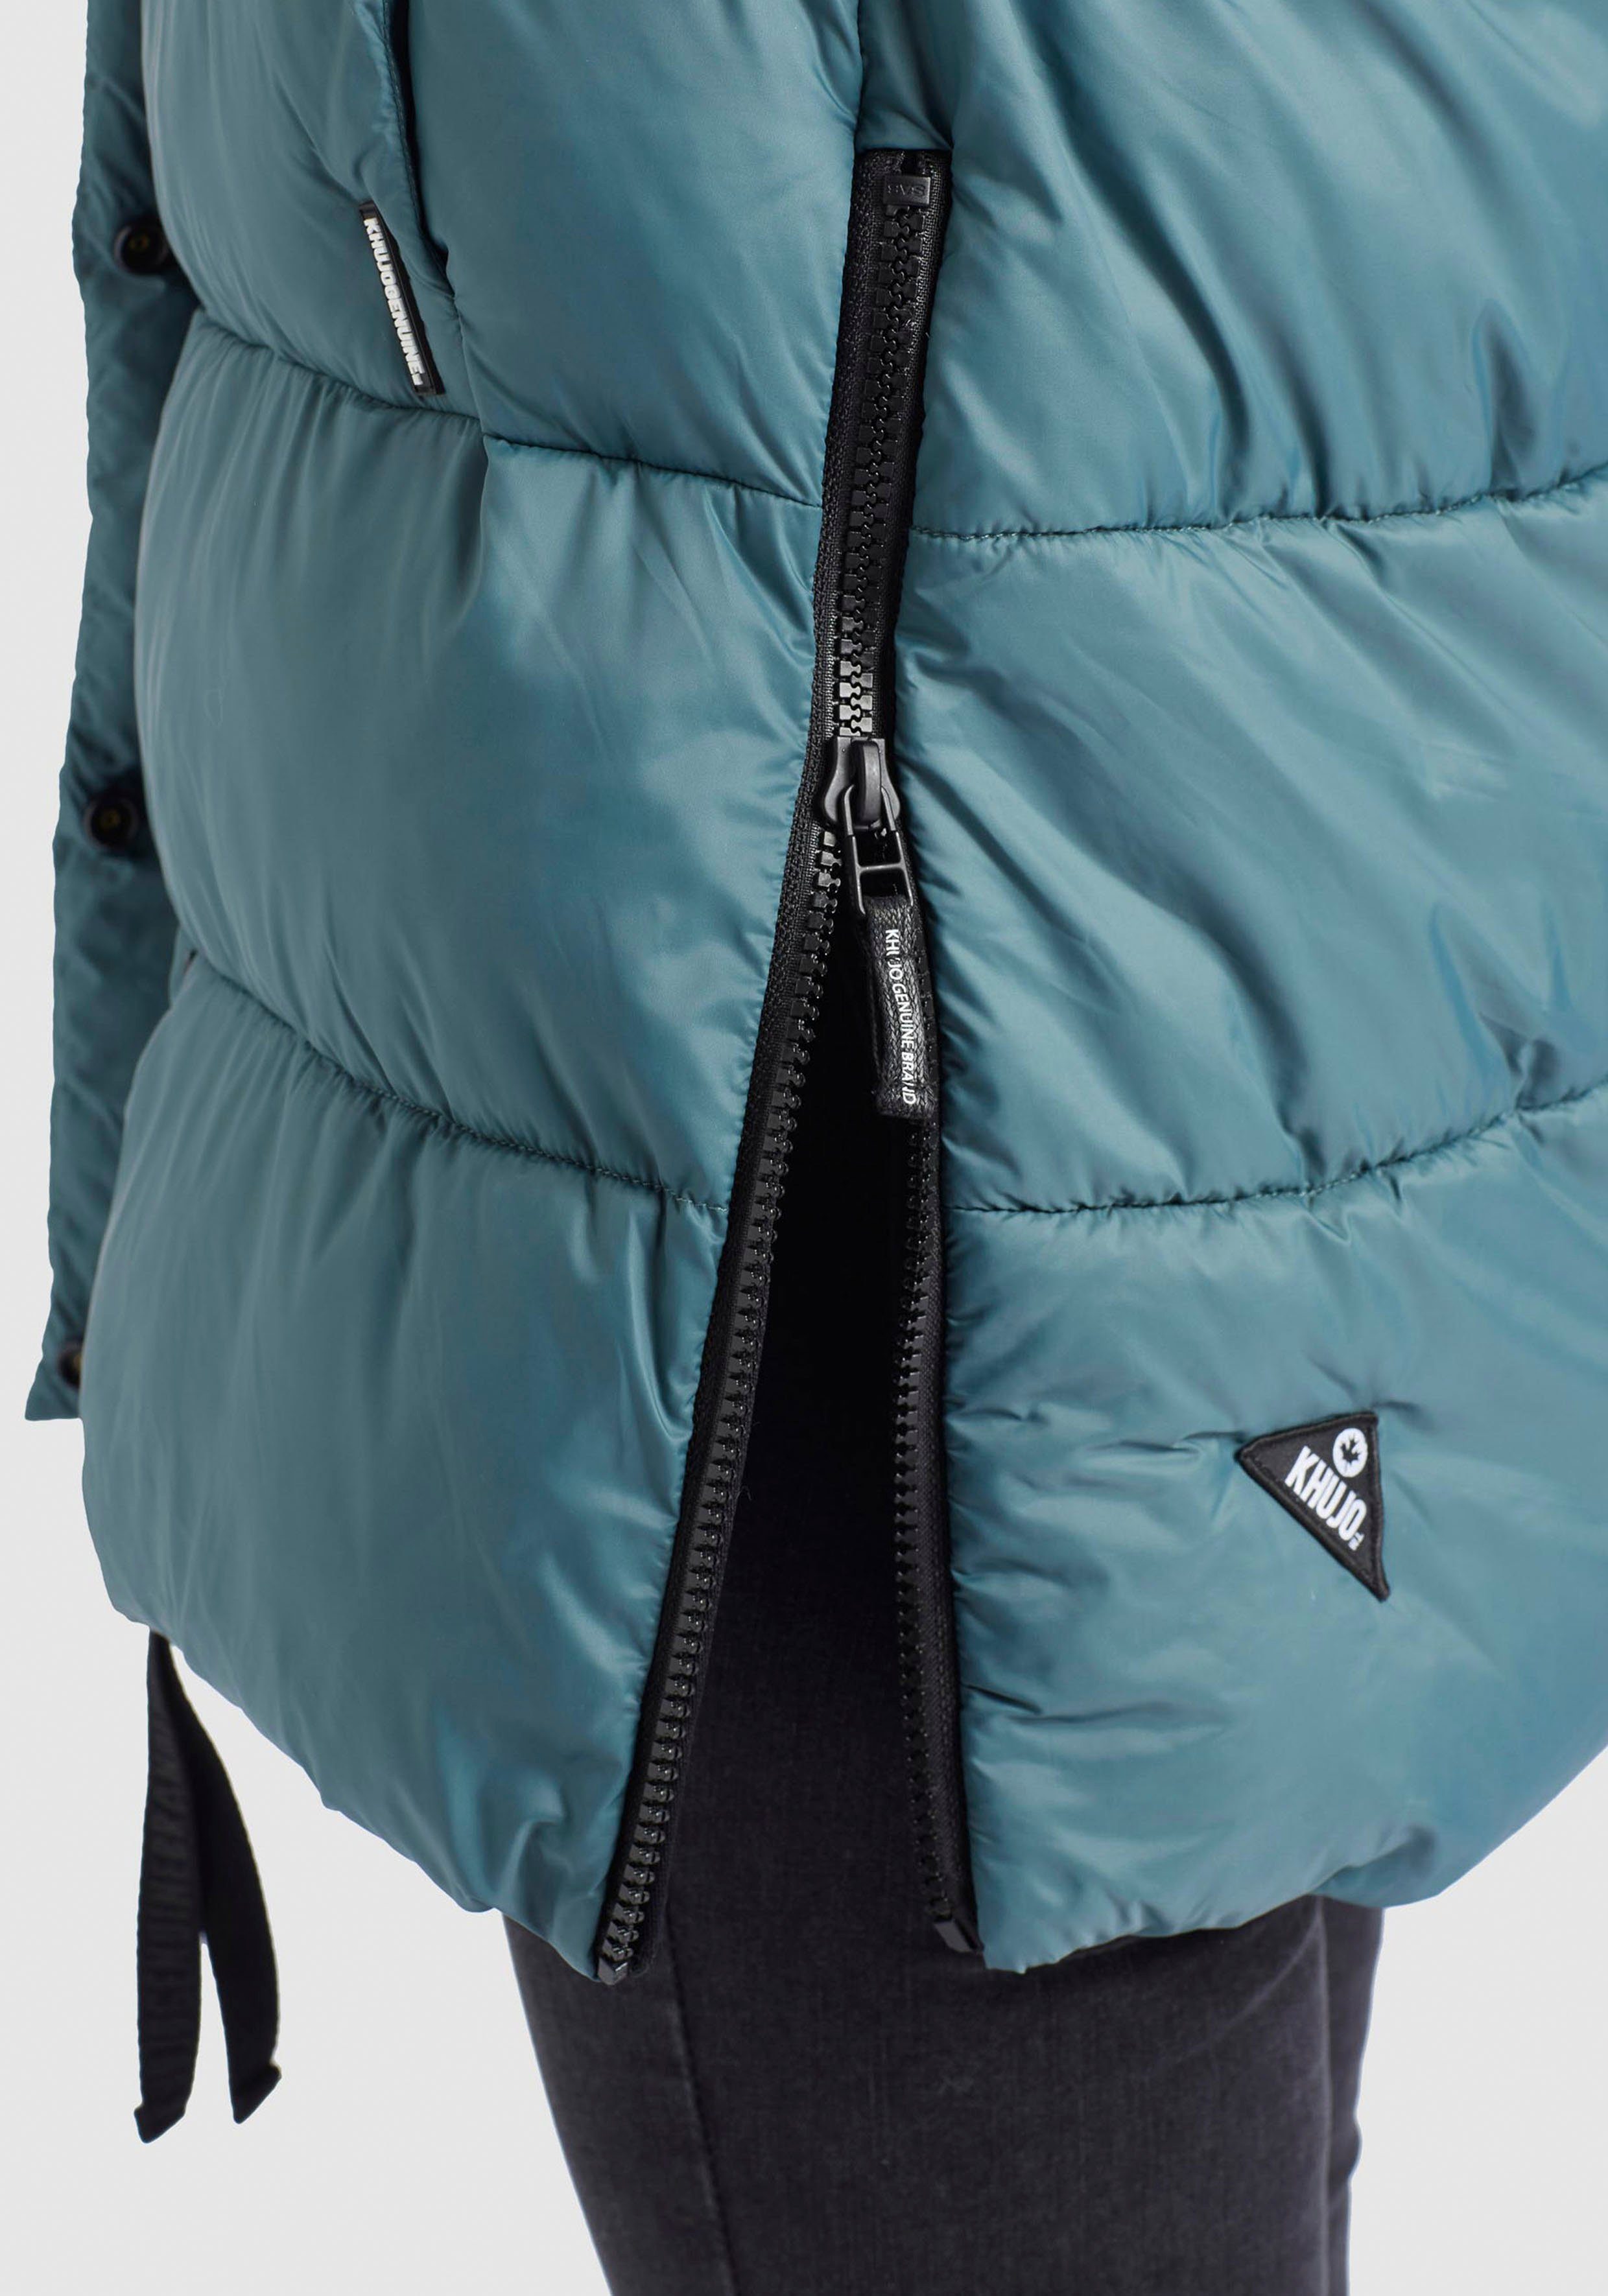 Damen Jacken khujo Steppjacke Nidalee Winterjacke mit Kapuze und hochschließenden Kragen